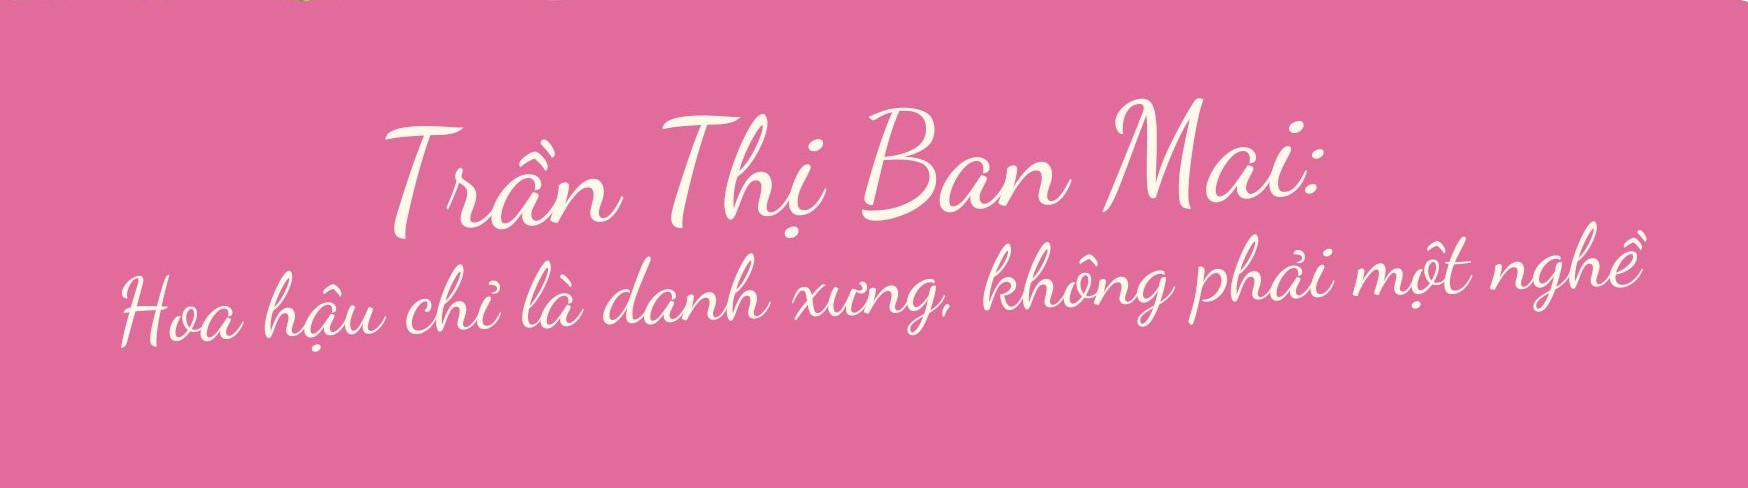 Trần Thị Ban Mai: Hoa hậu chỉ là danh xưng, không phải một nghề - Ảnh 1.